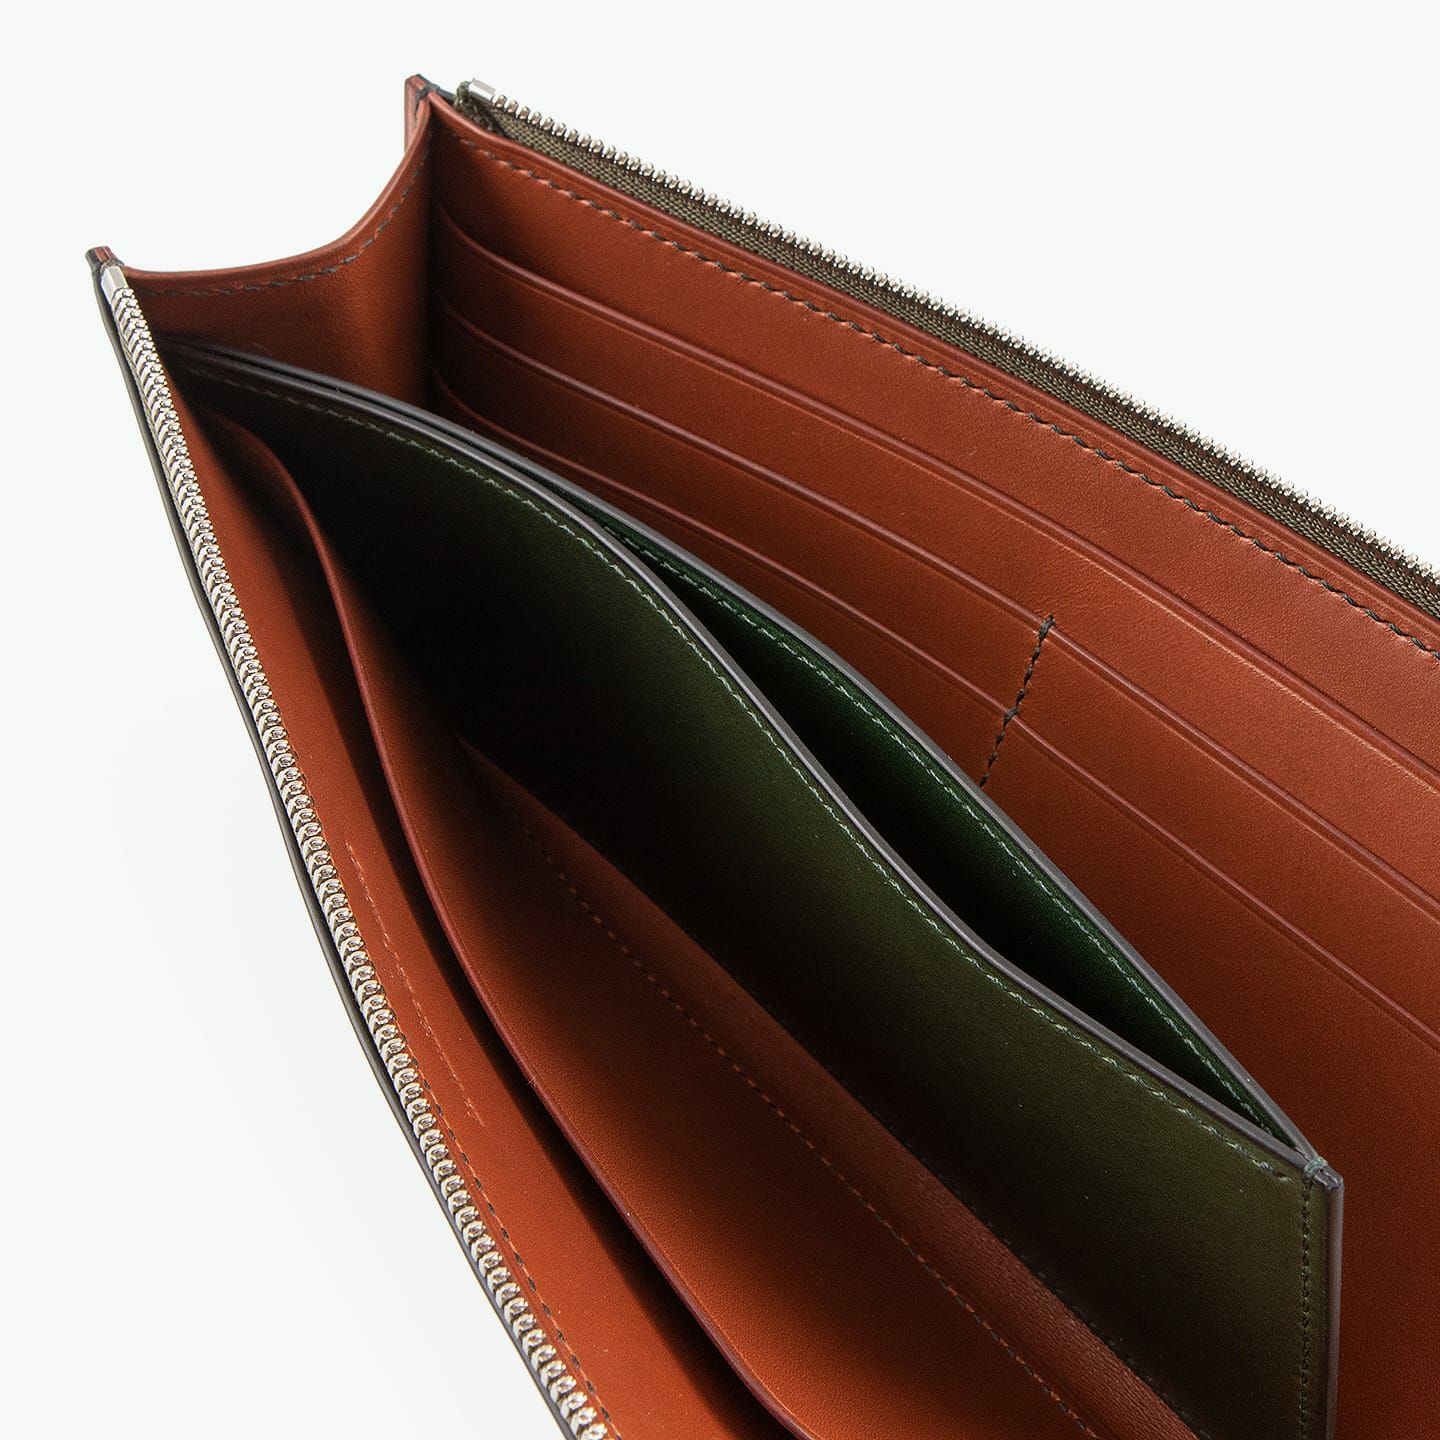 装＆内装コインポケット（イングラサット）：Green、内装（イングラサット）：Red Brown、糸色：外装＆内装コインポケットと同系色、ファスナー：Silver